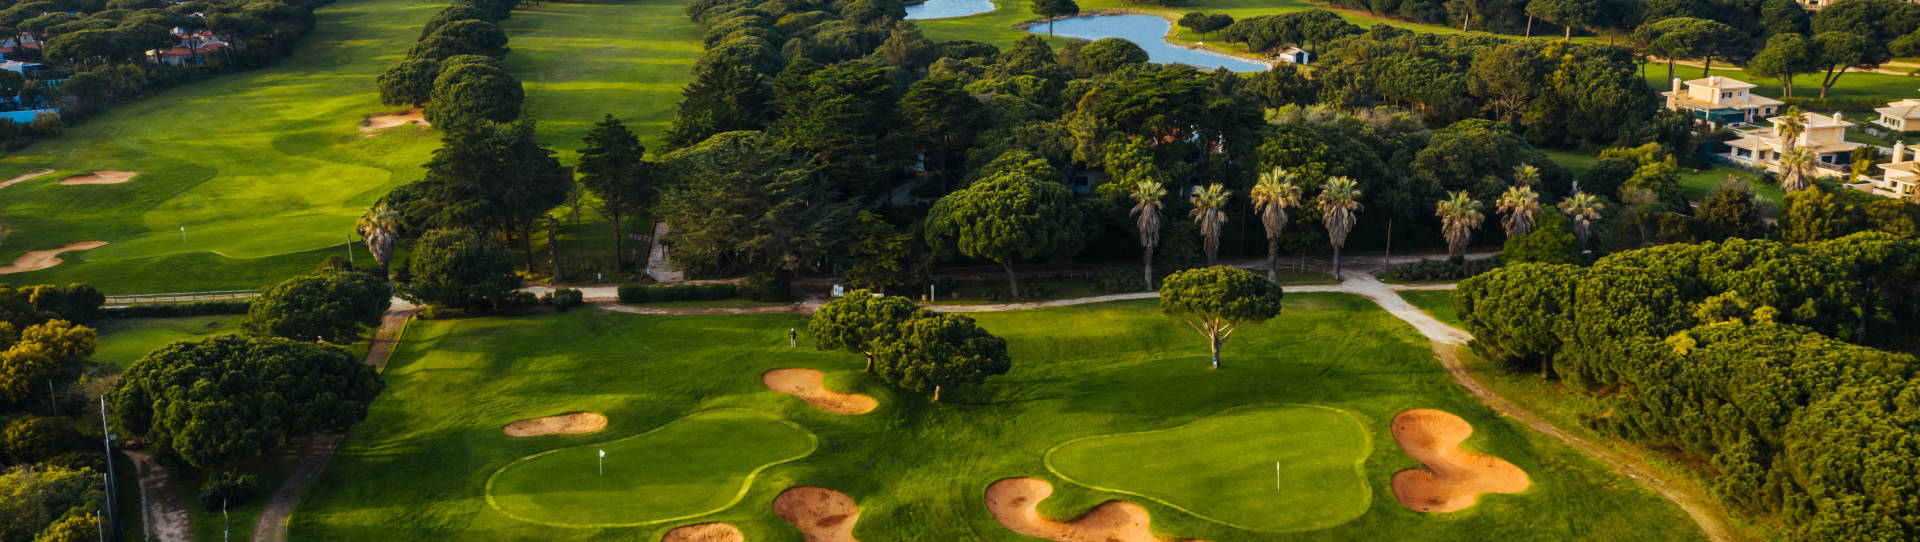 Portugal golf courses - Quinta da Marinha - Photo 1